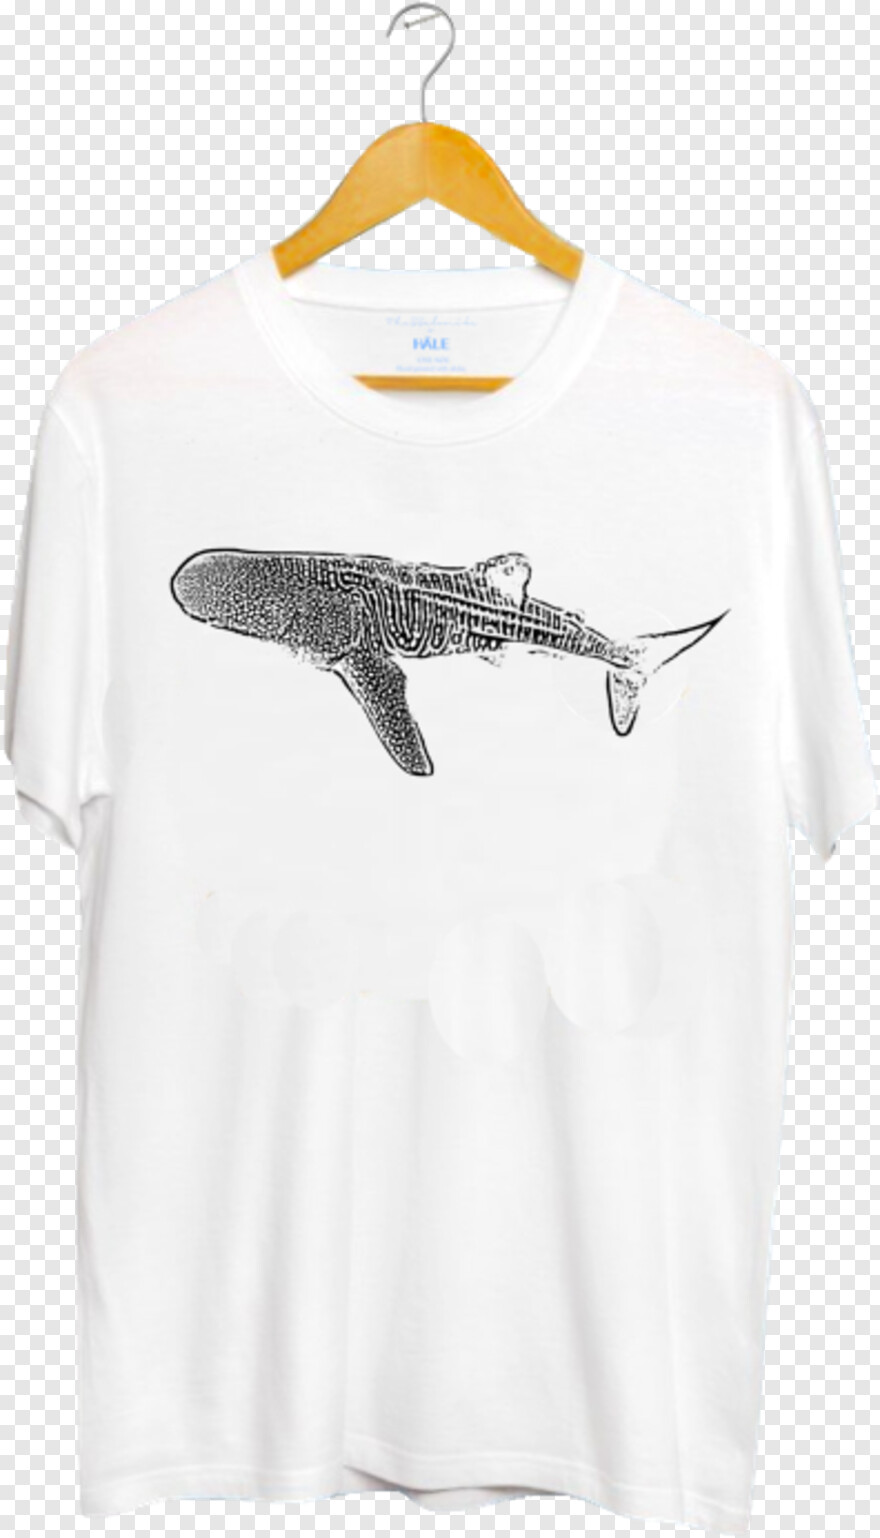 whale-shark # 539738